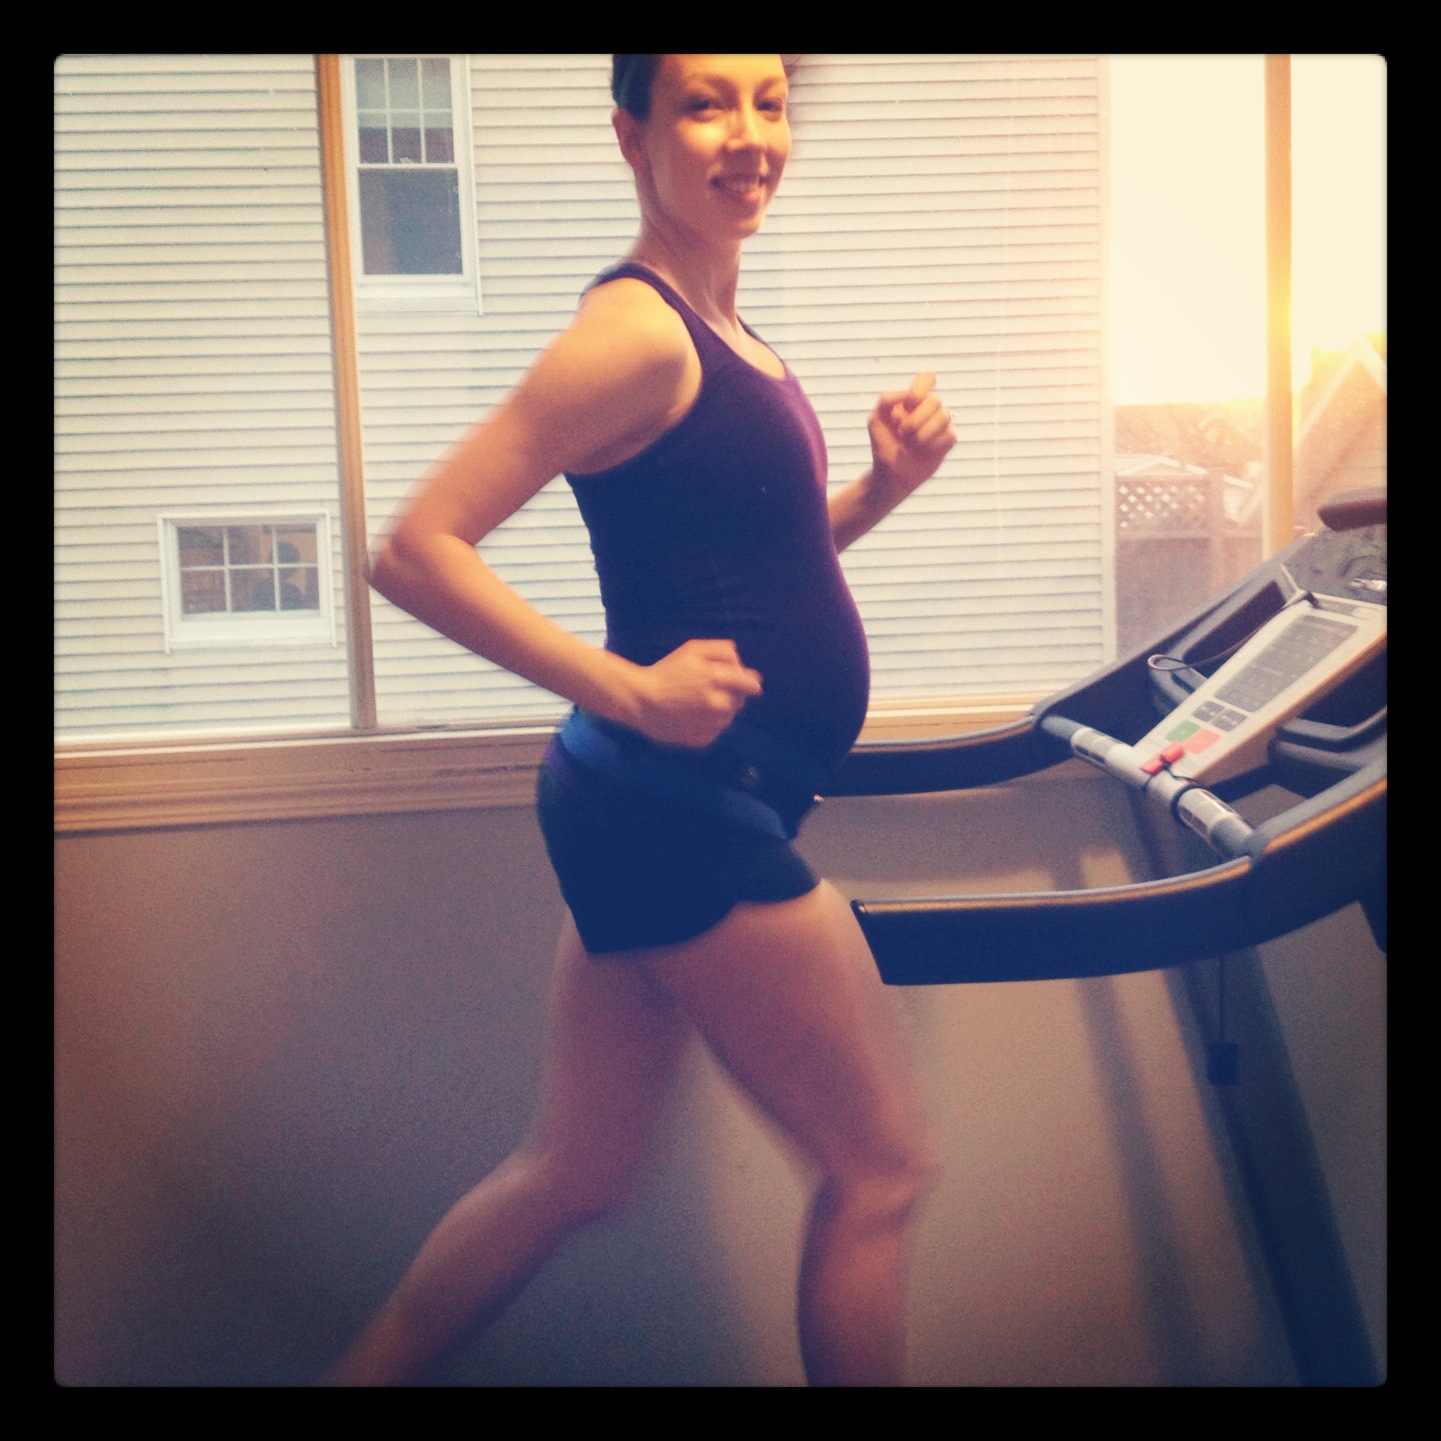 pregnant runner on treadmill